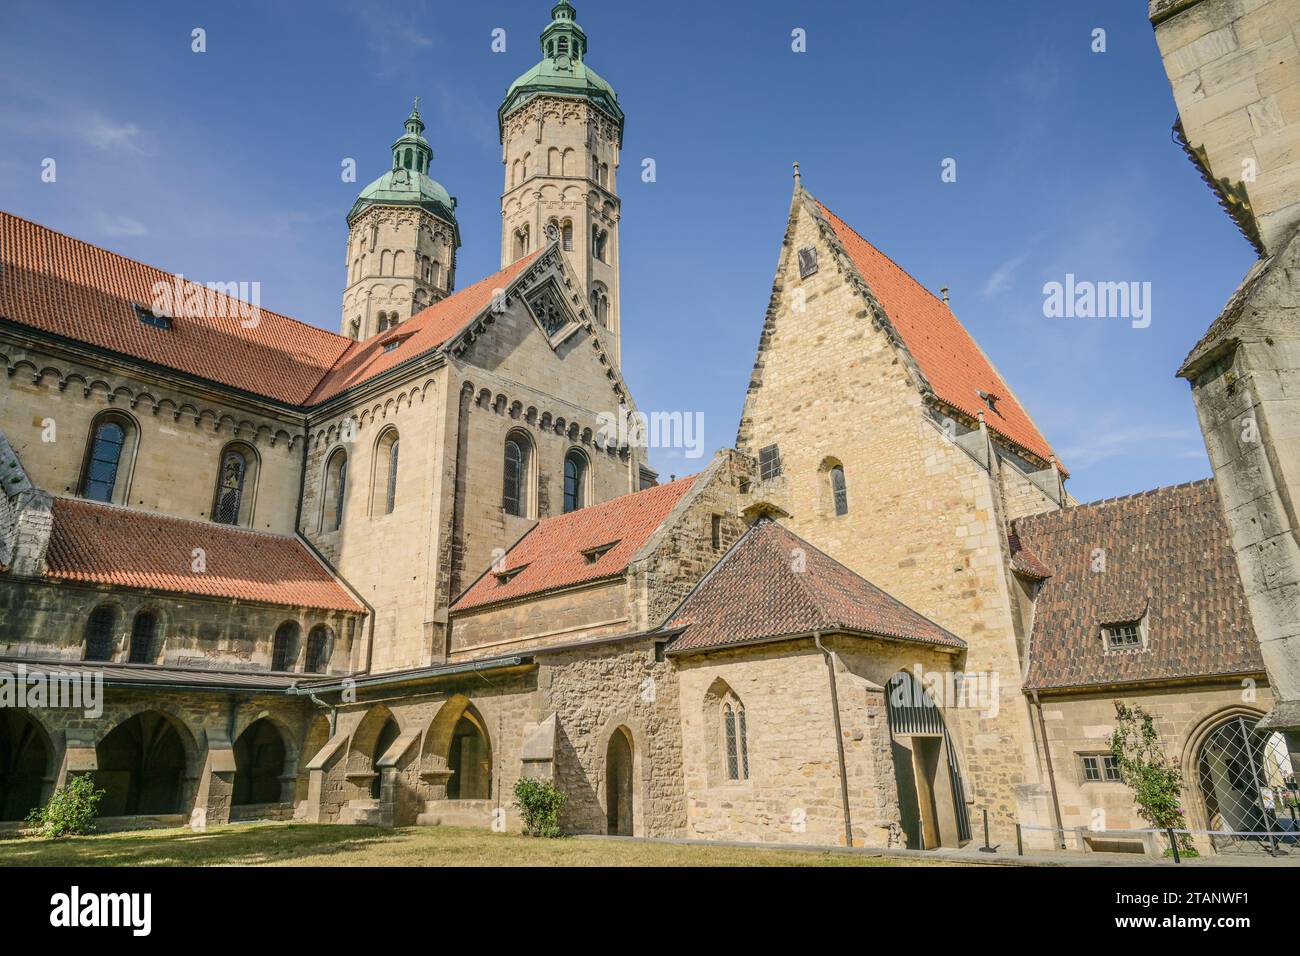 Dom St Peter und Paul, Ansicht vom Innenhof, Domplatz, Naumburg, Sachsen-Anhalt, Deutschland Foto Stock